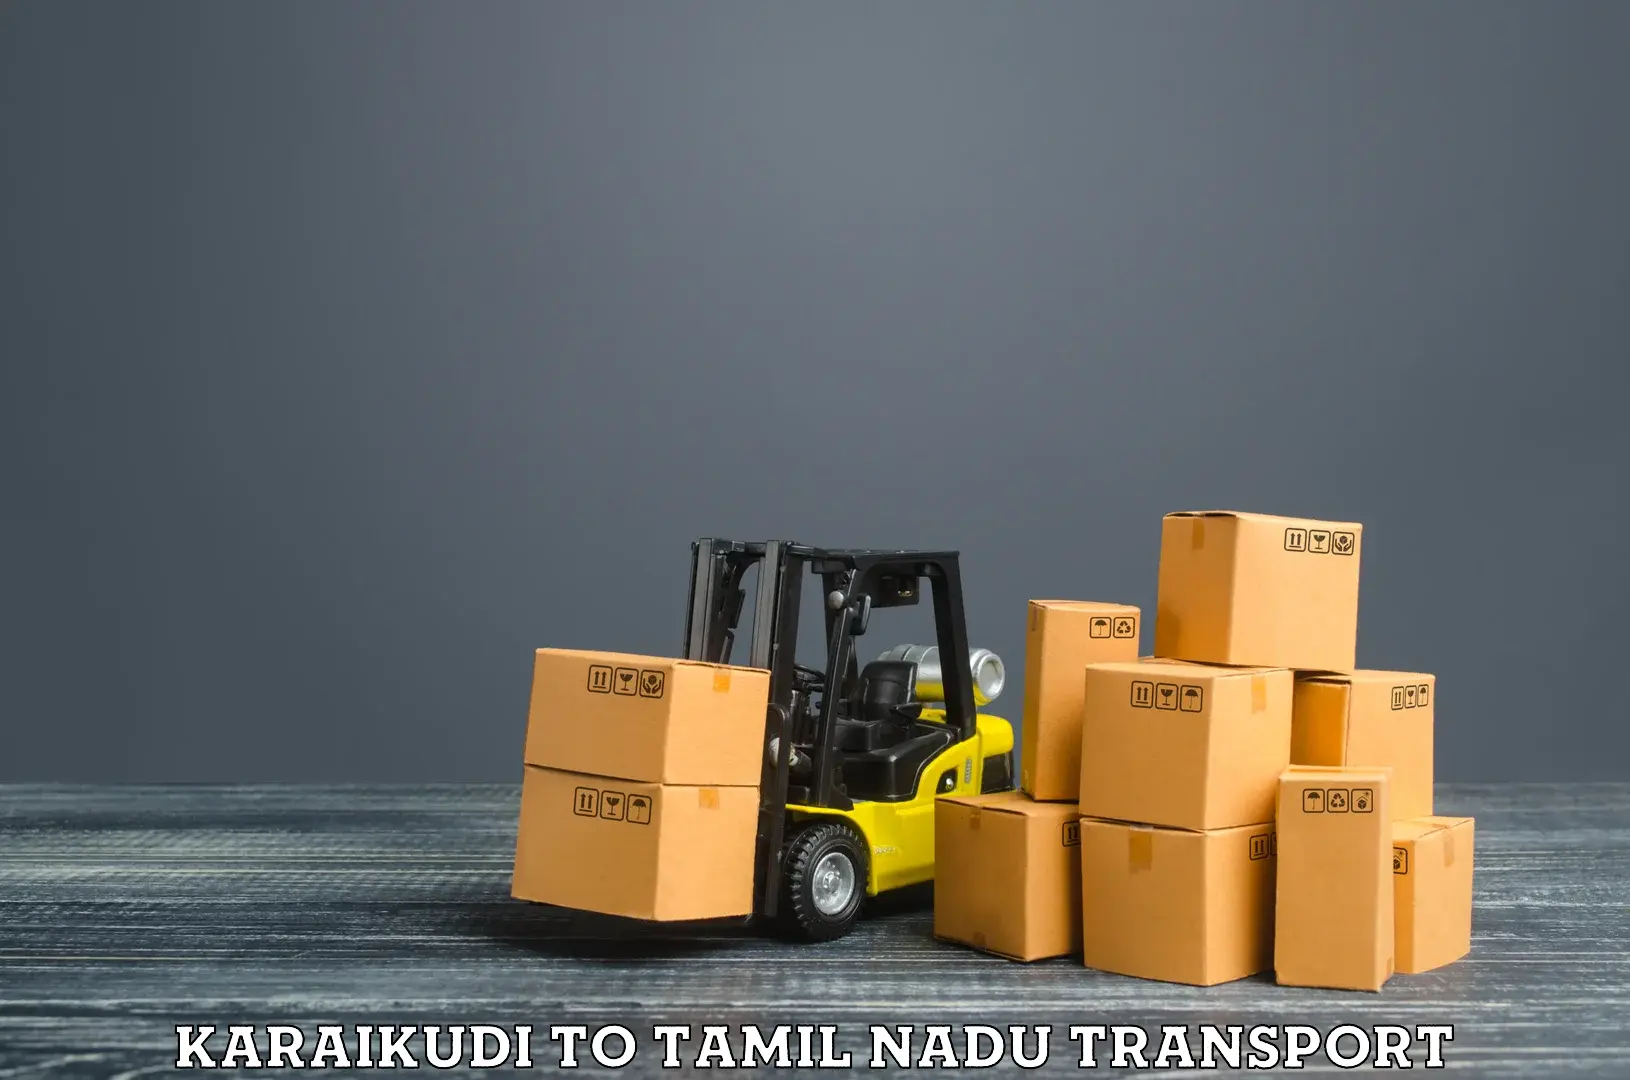 Daily transport service Karaikudi to Ramanathapuram